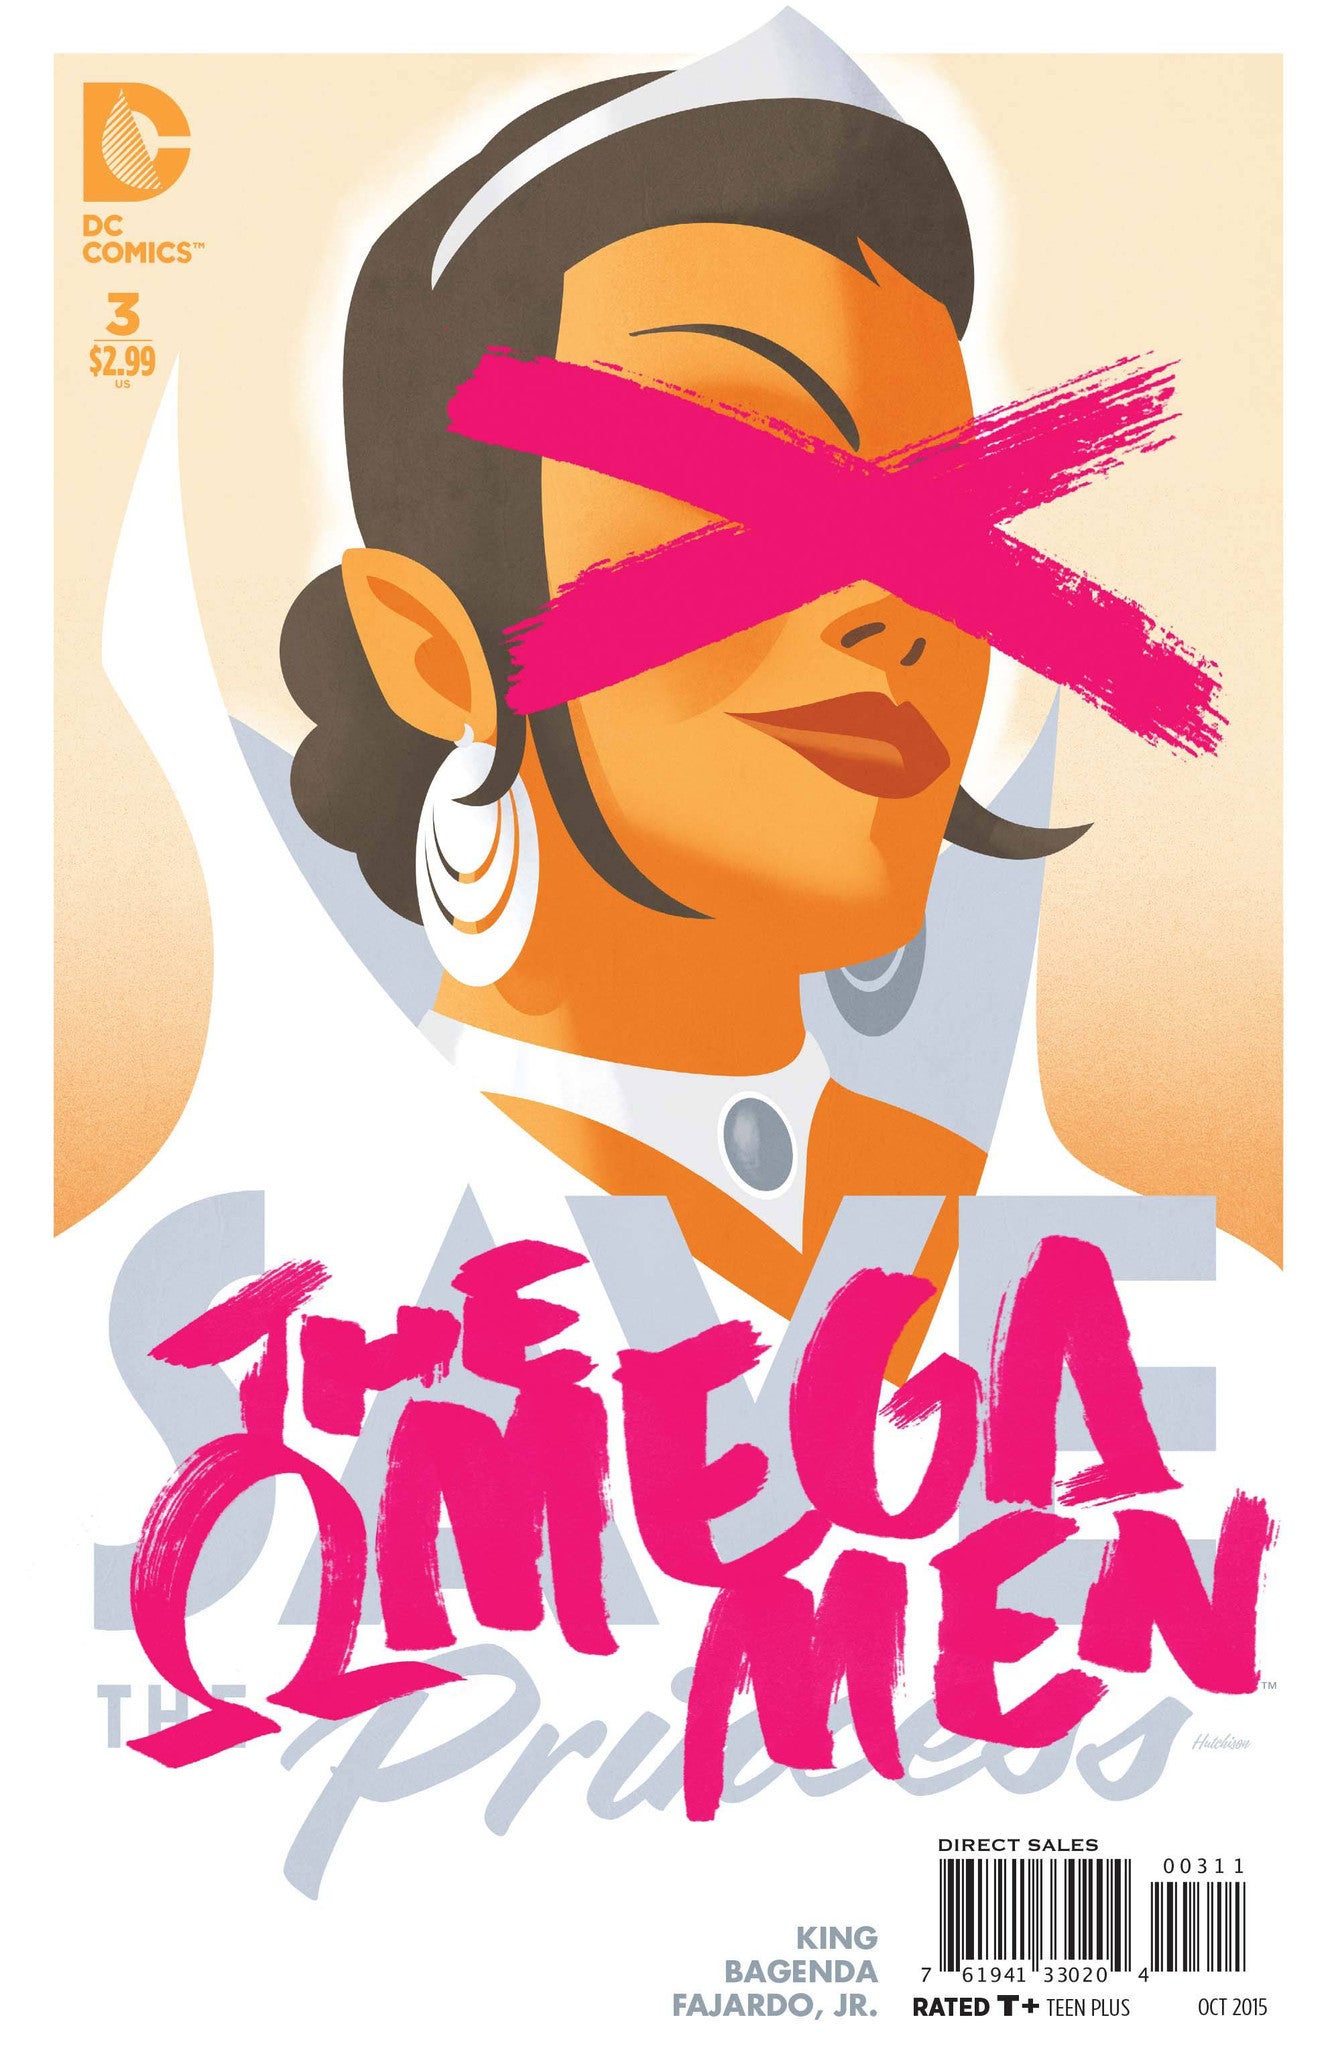 The Omega Men (2015) #3